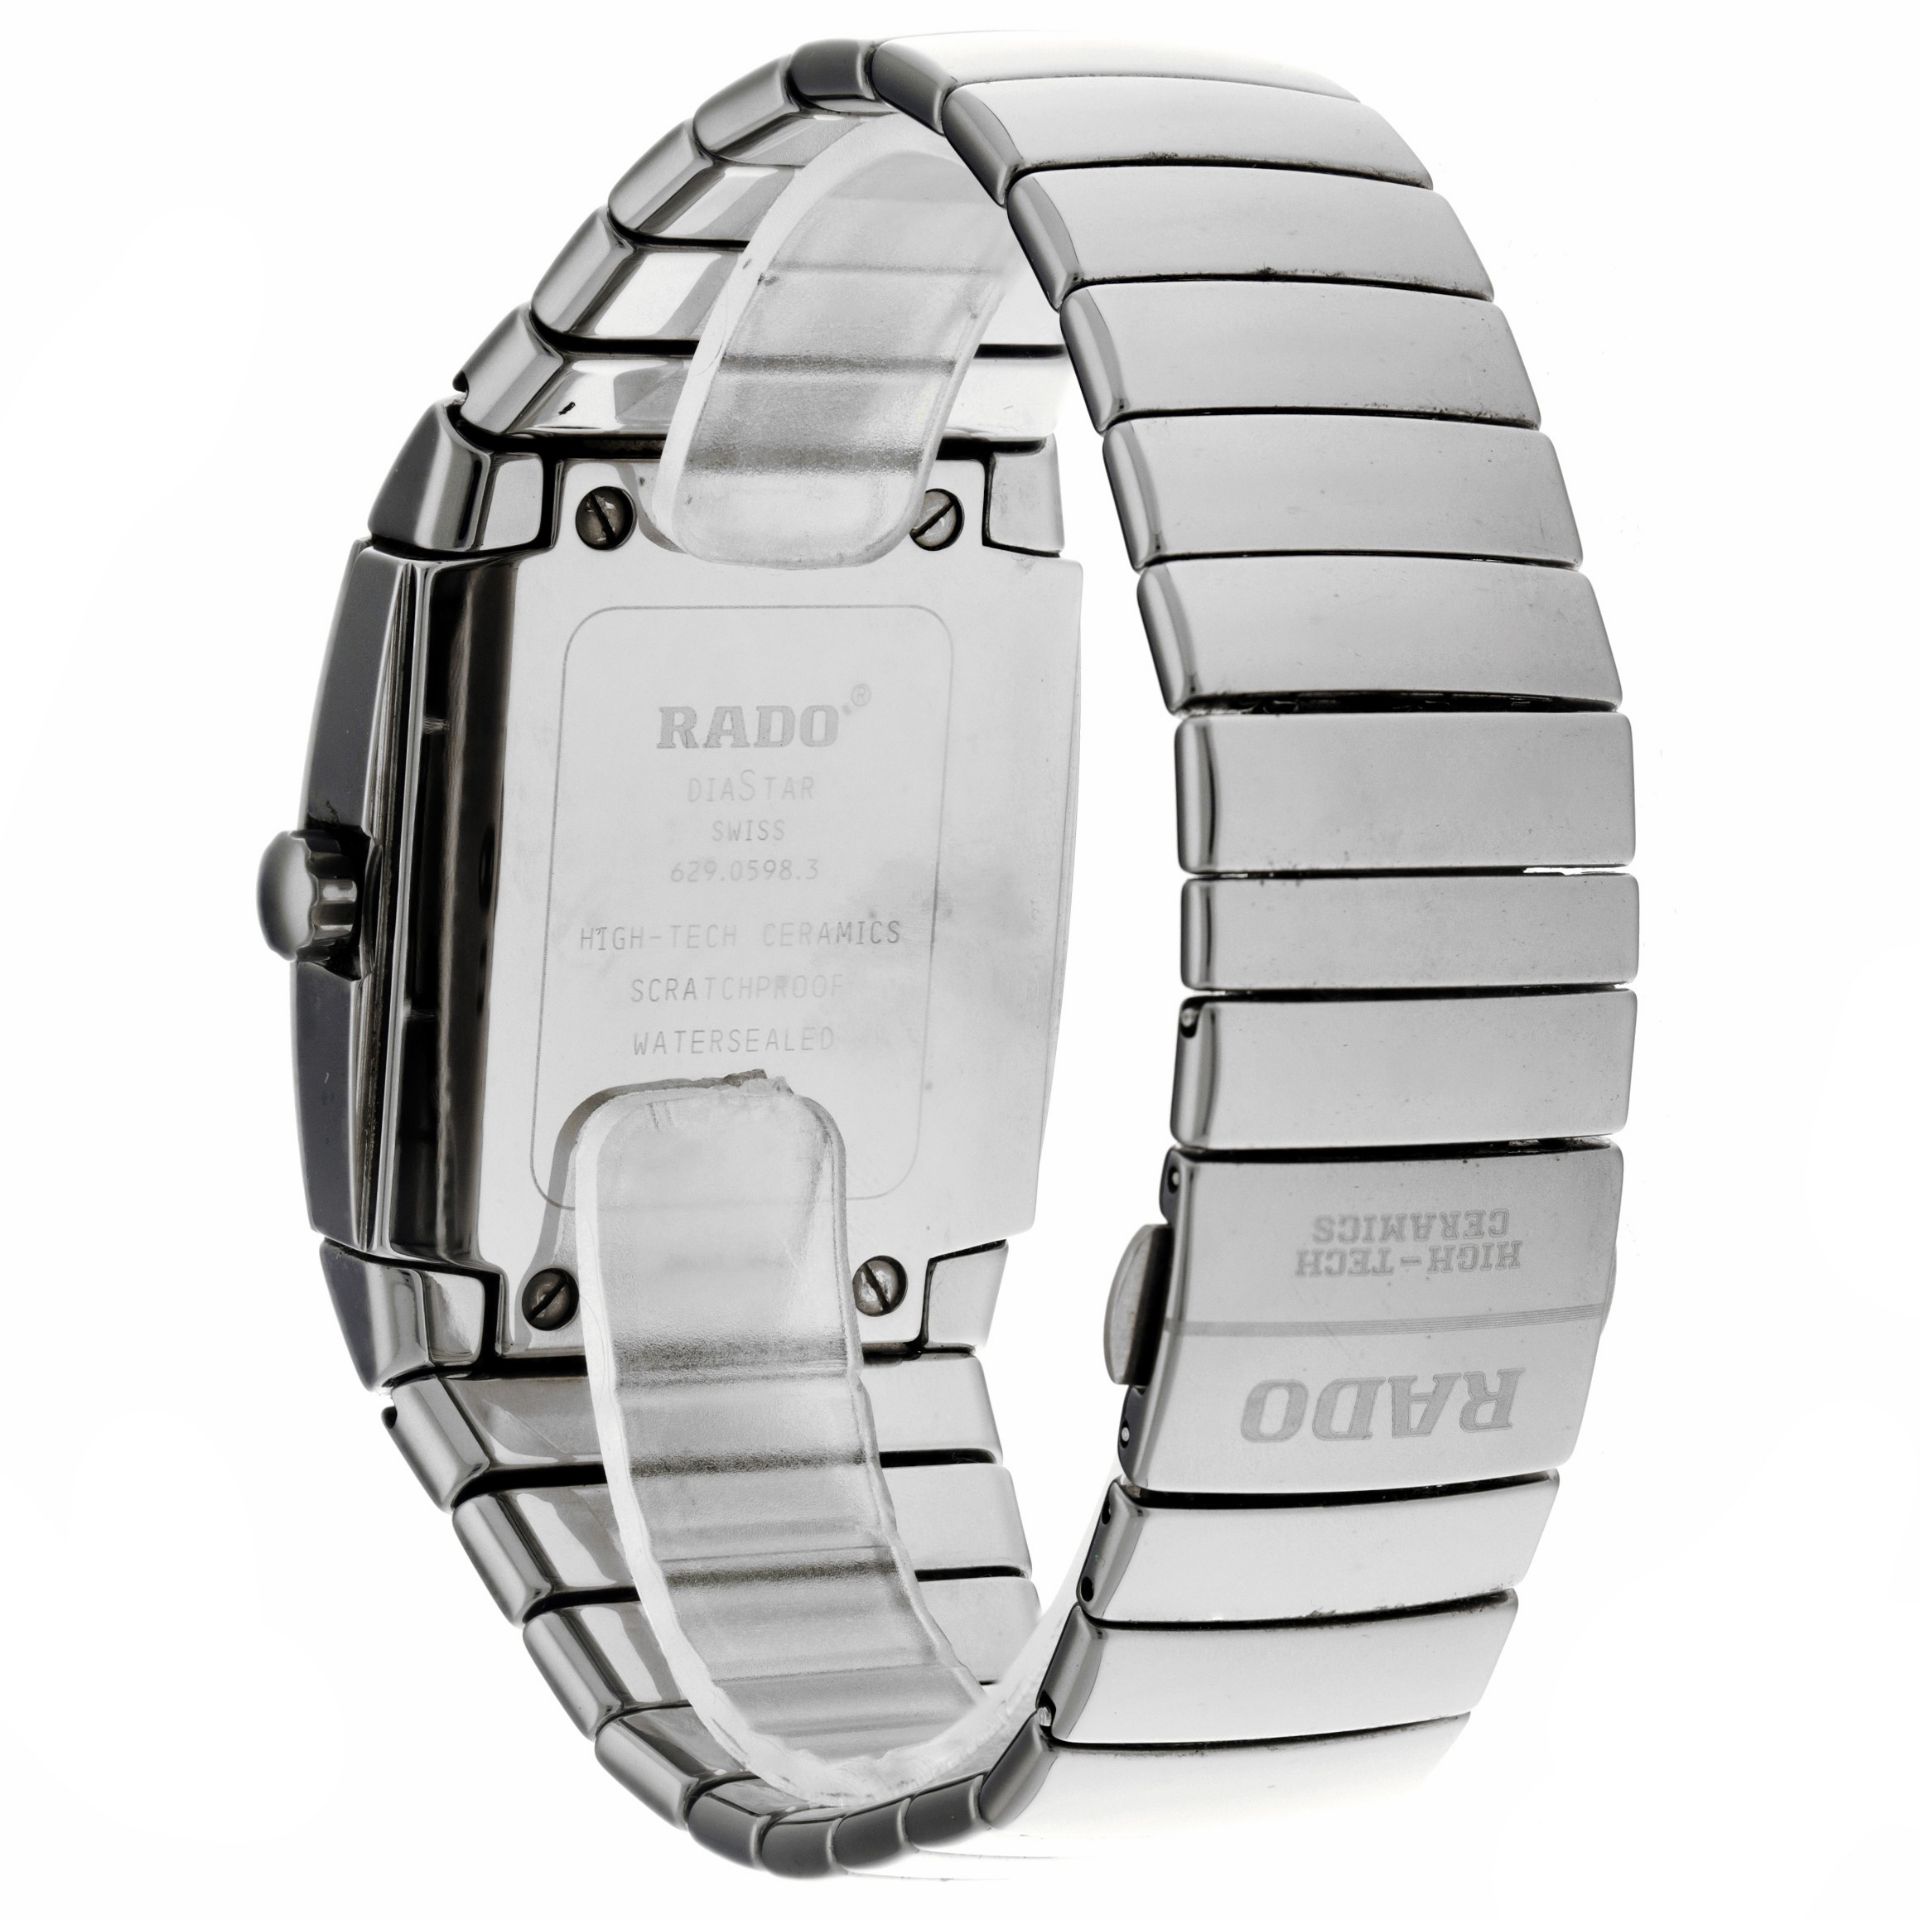 No Reserve - Rado Sintra 629.0598.3 - Men's watch. - Image 2 of 6